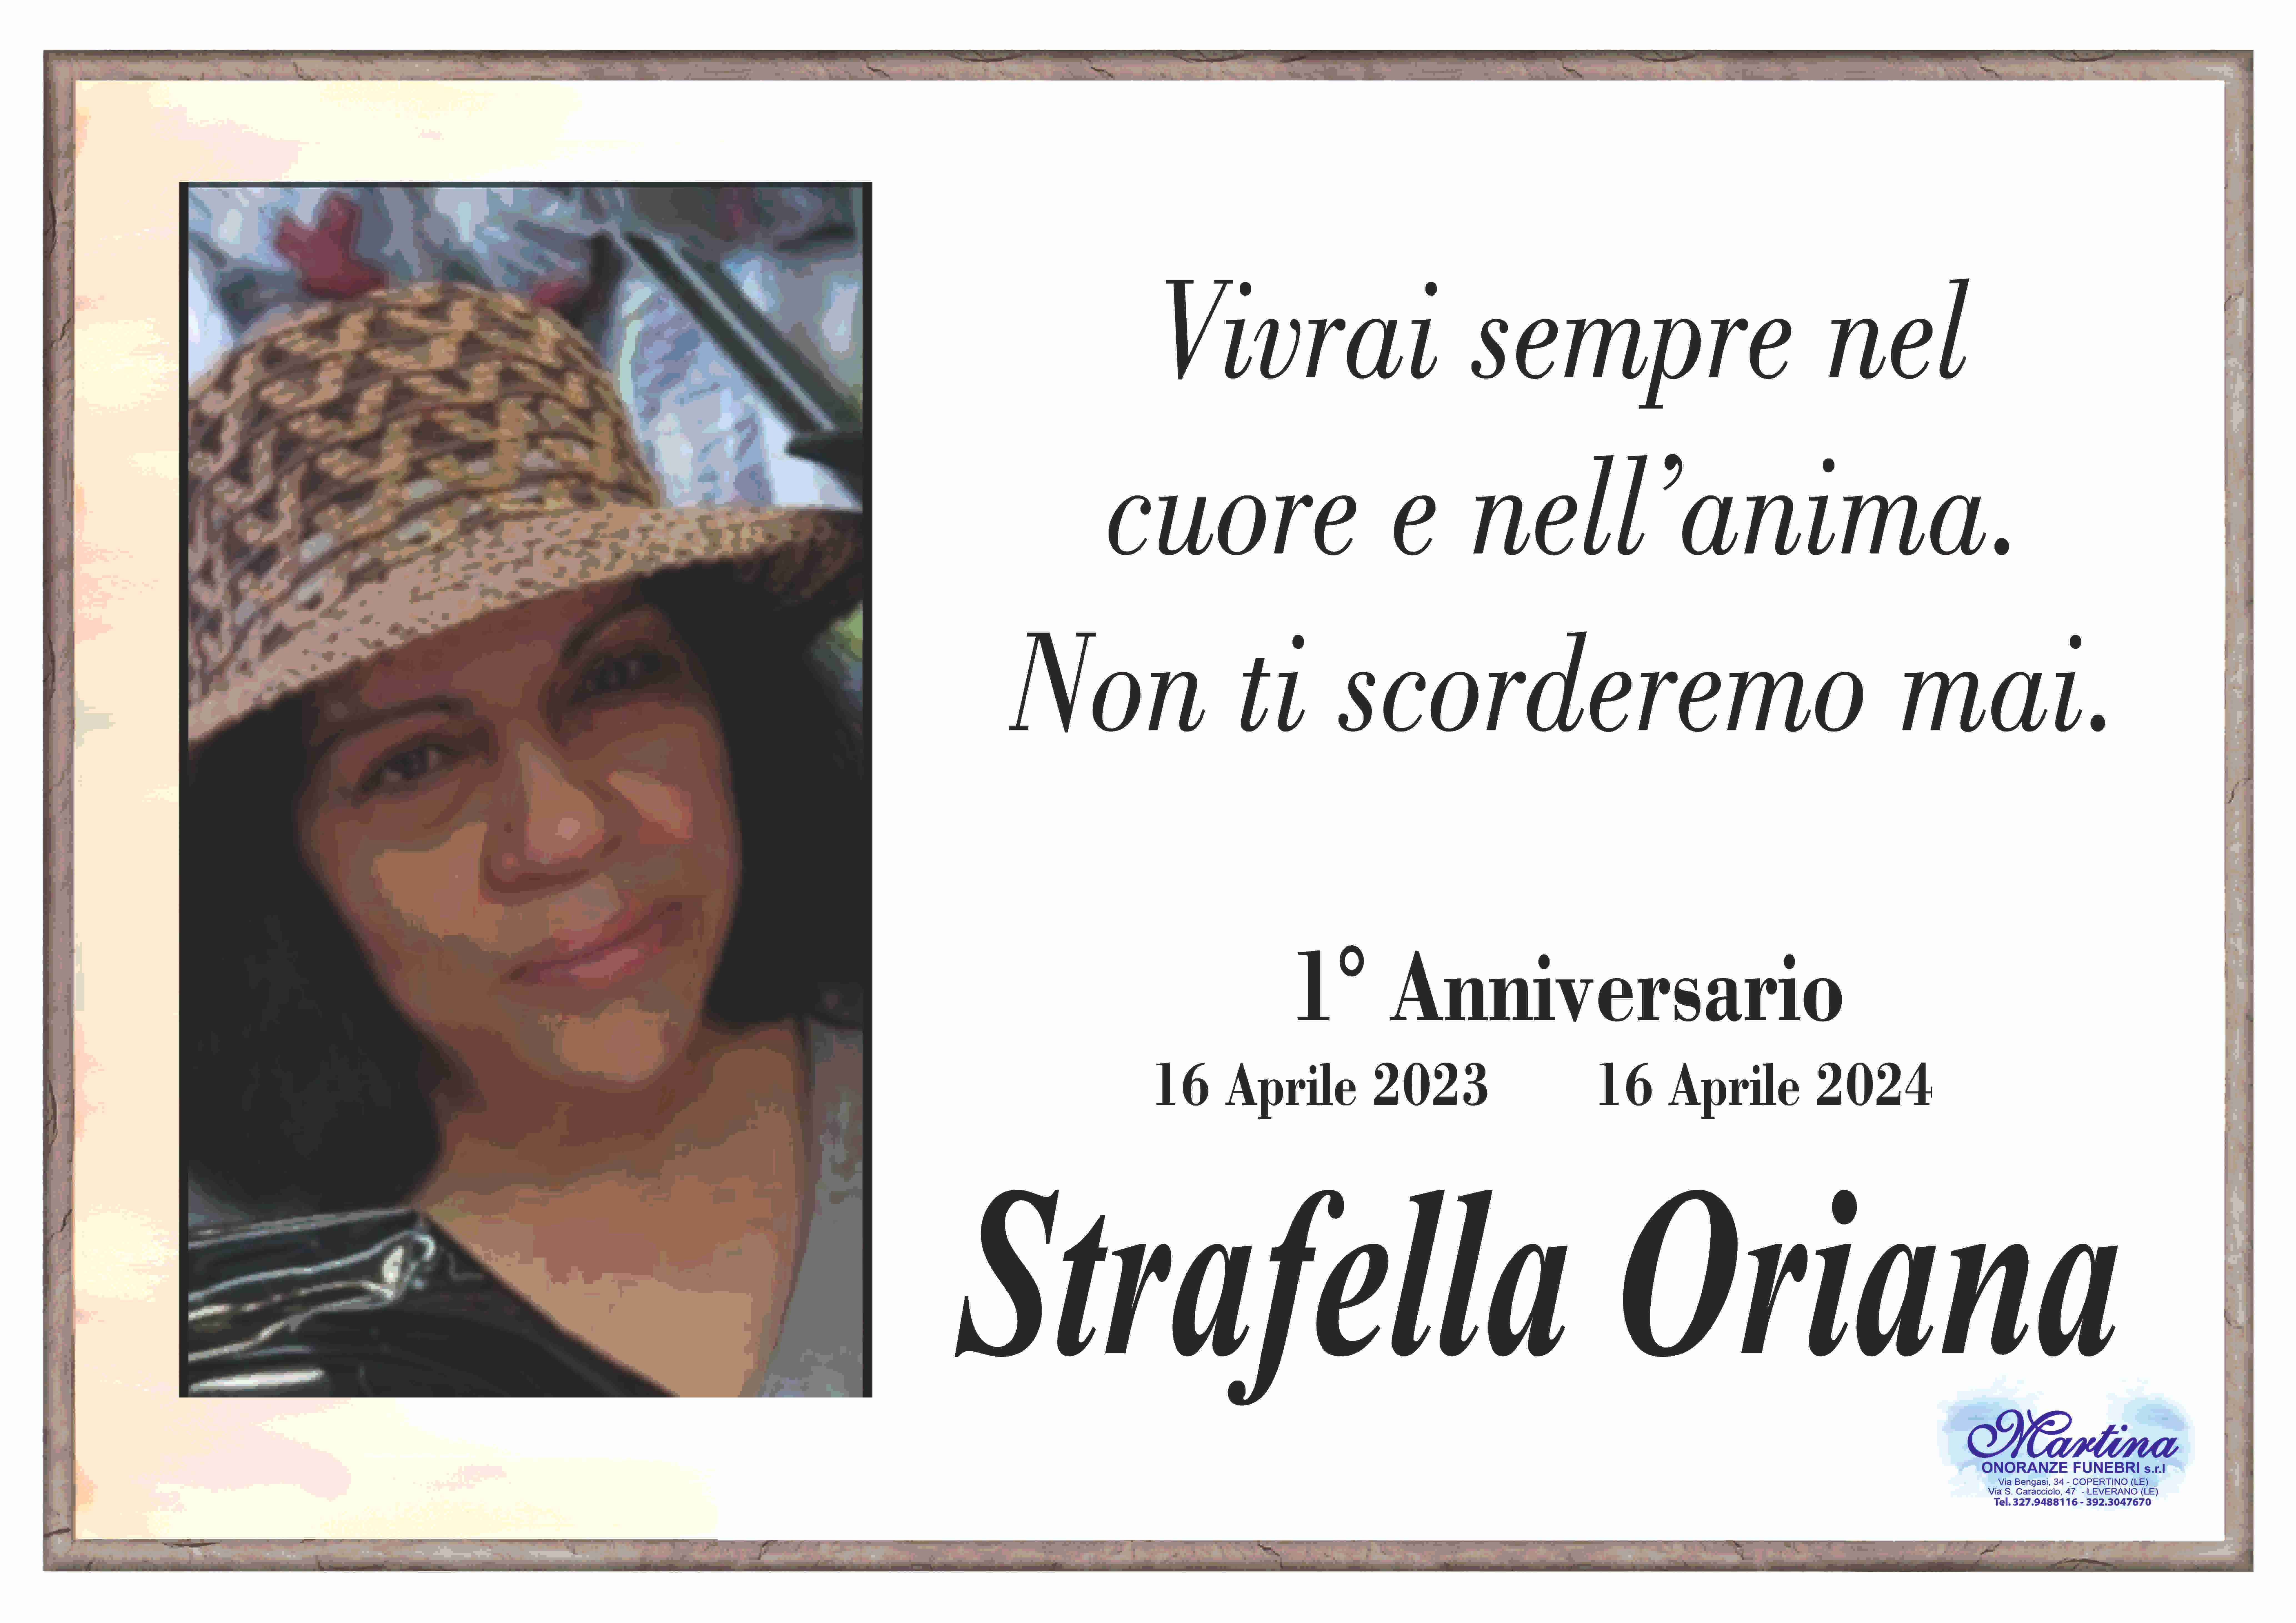 Oriana Strafella